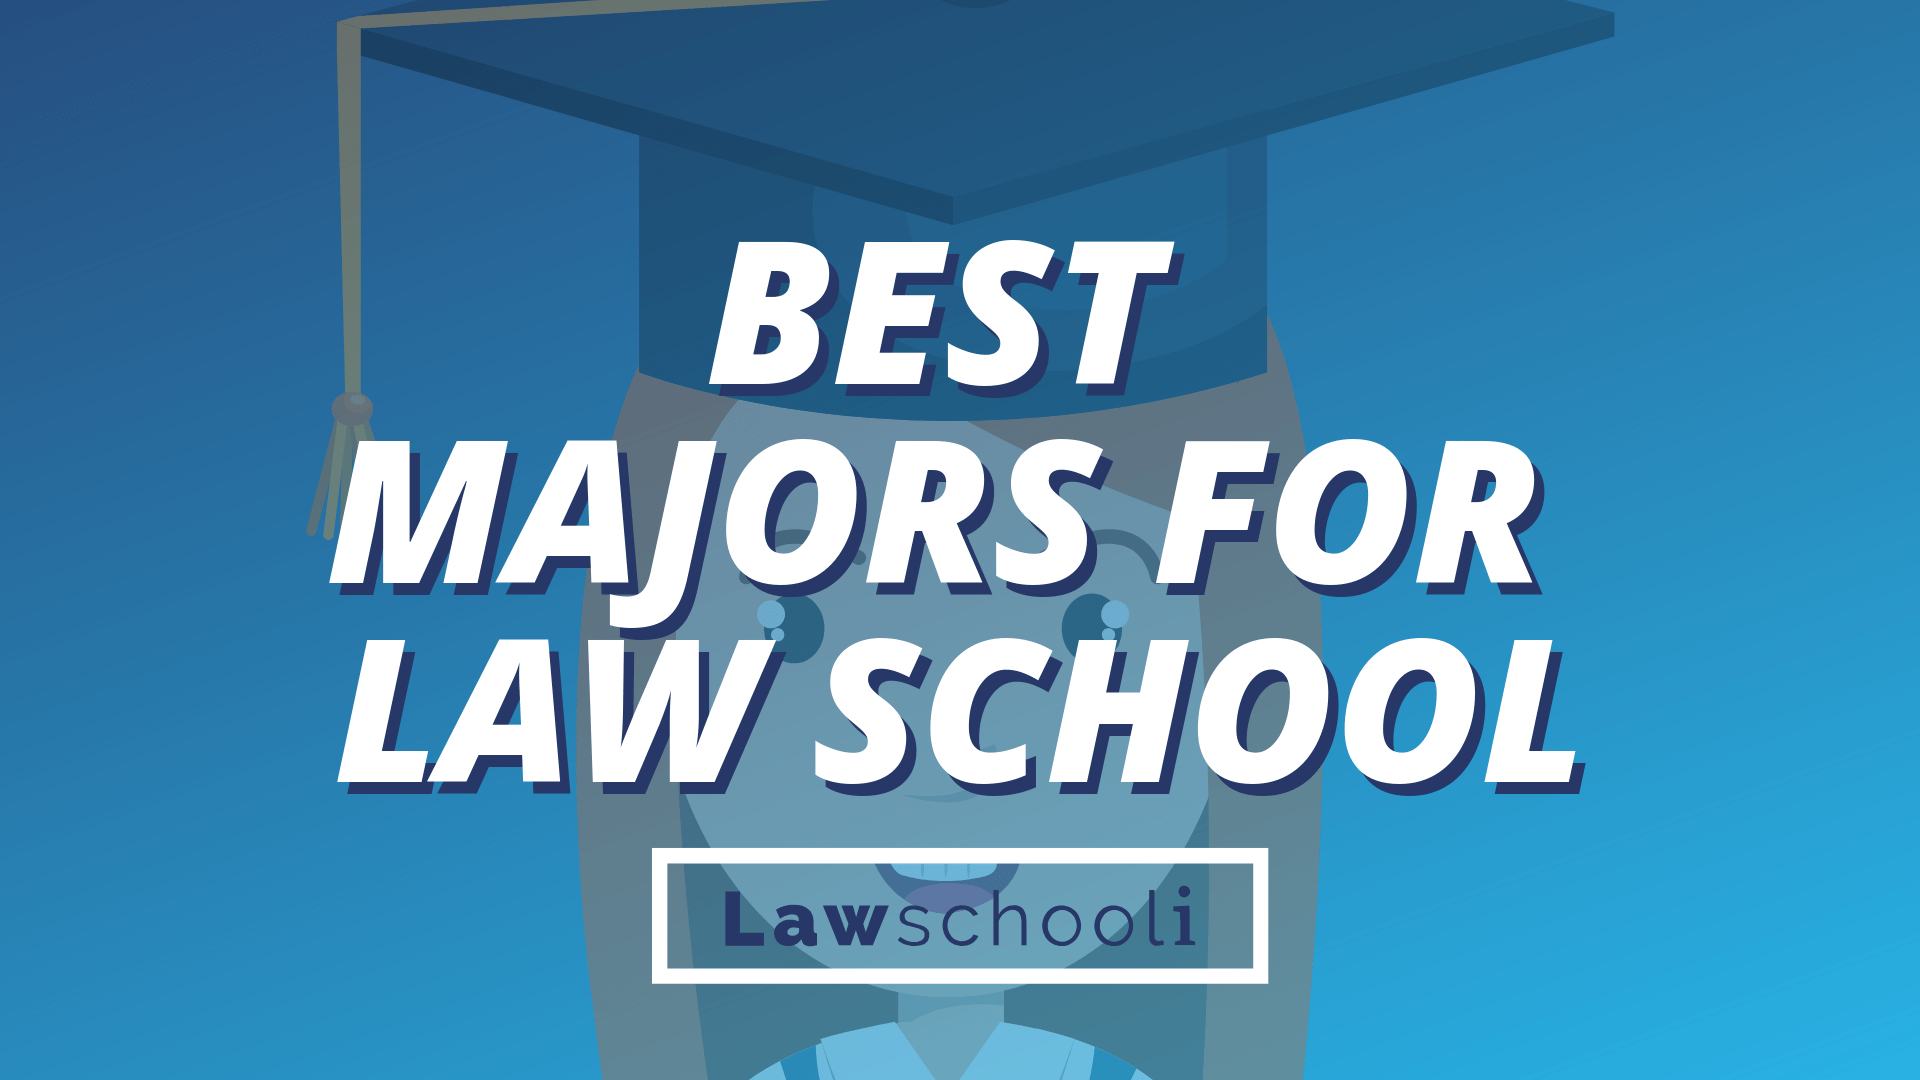 Best Majors For Law School Lawschooli - 